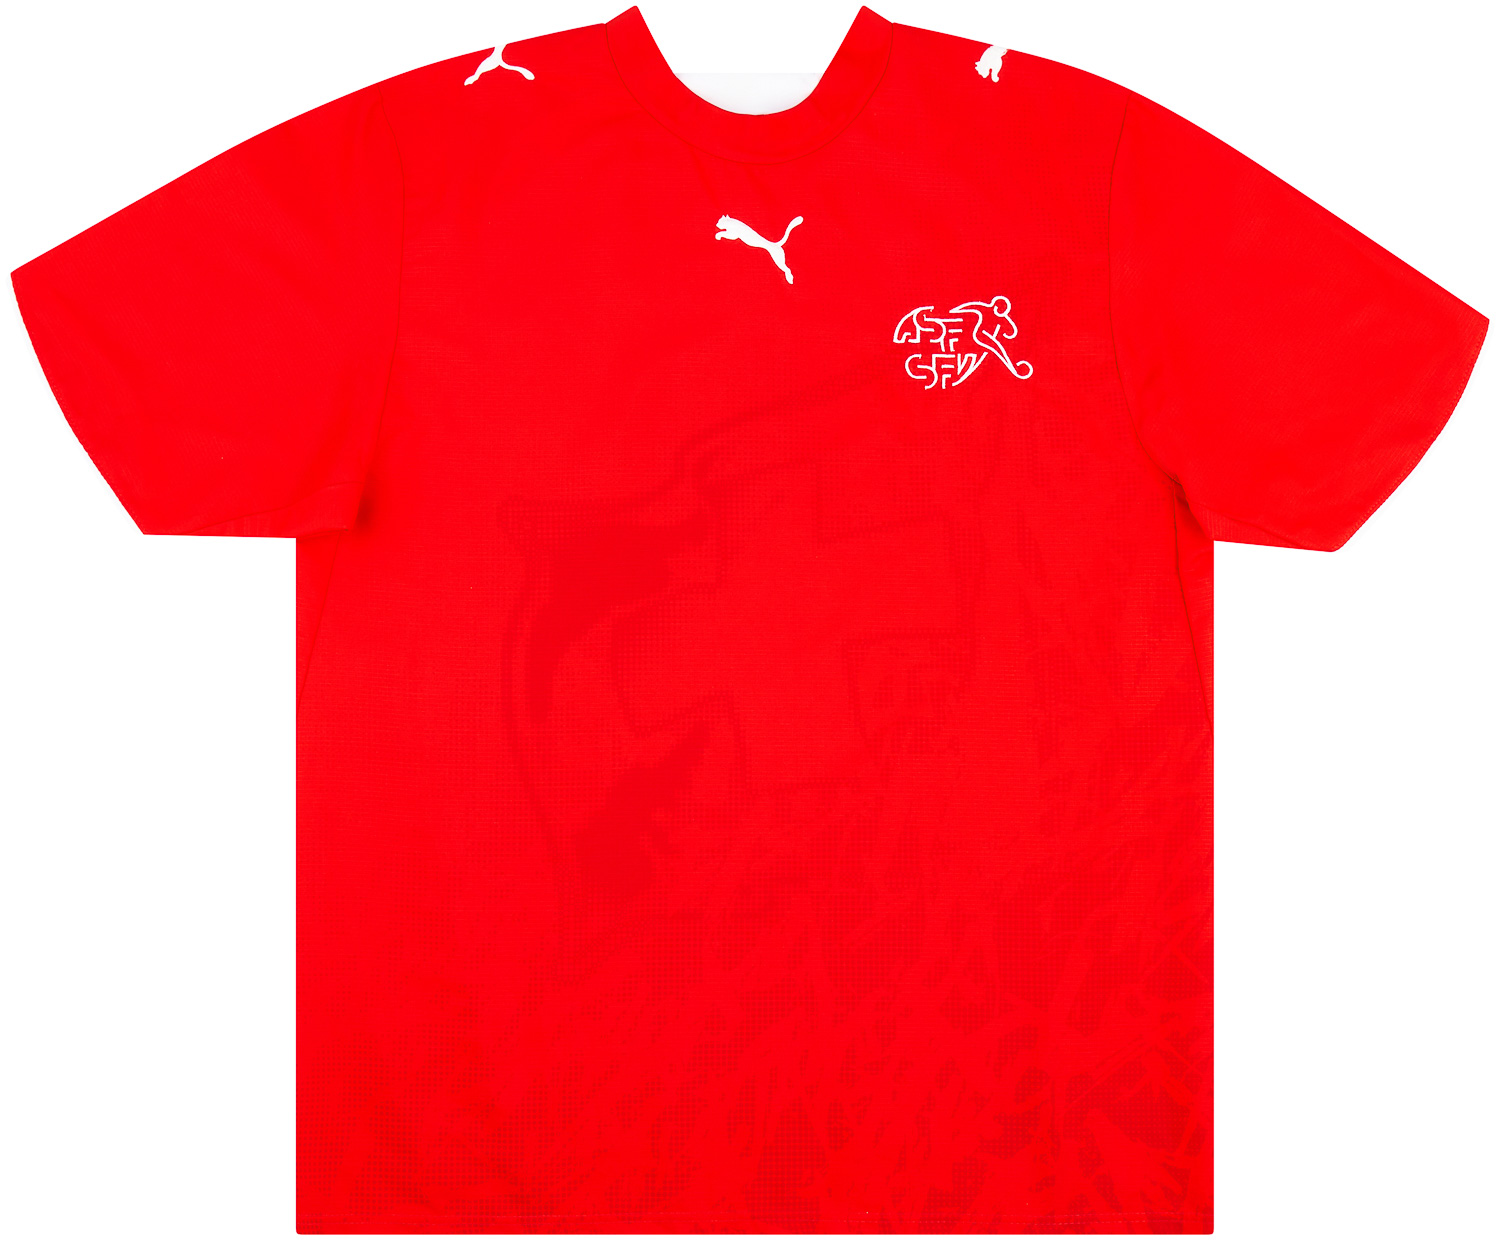 2006-08 Switzerland Player Issue Home Shirt - 8/10 - ()